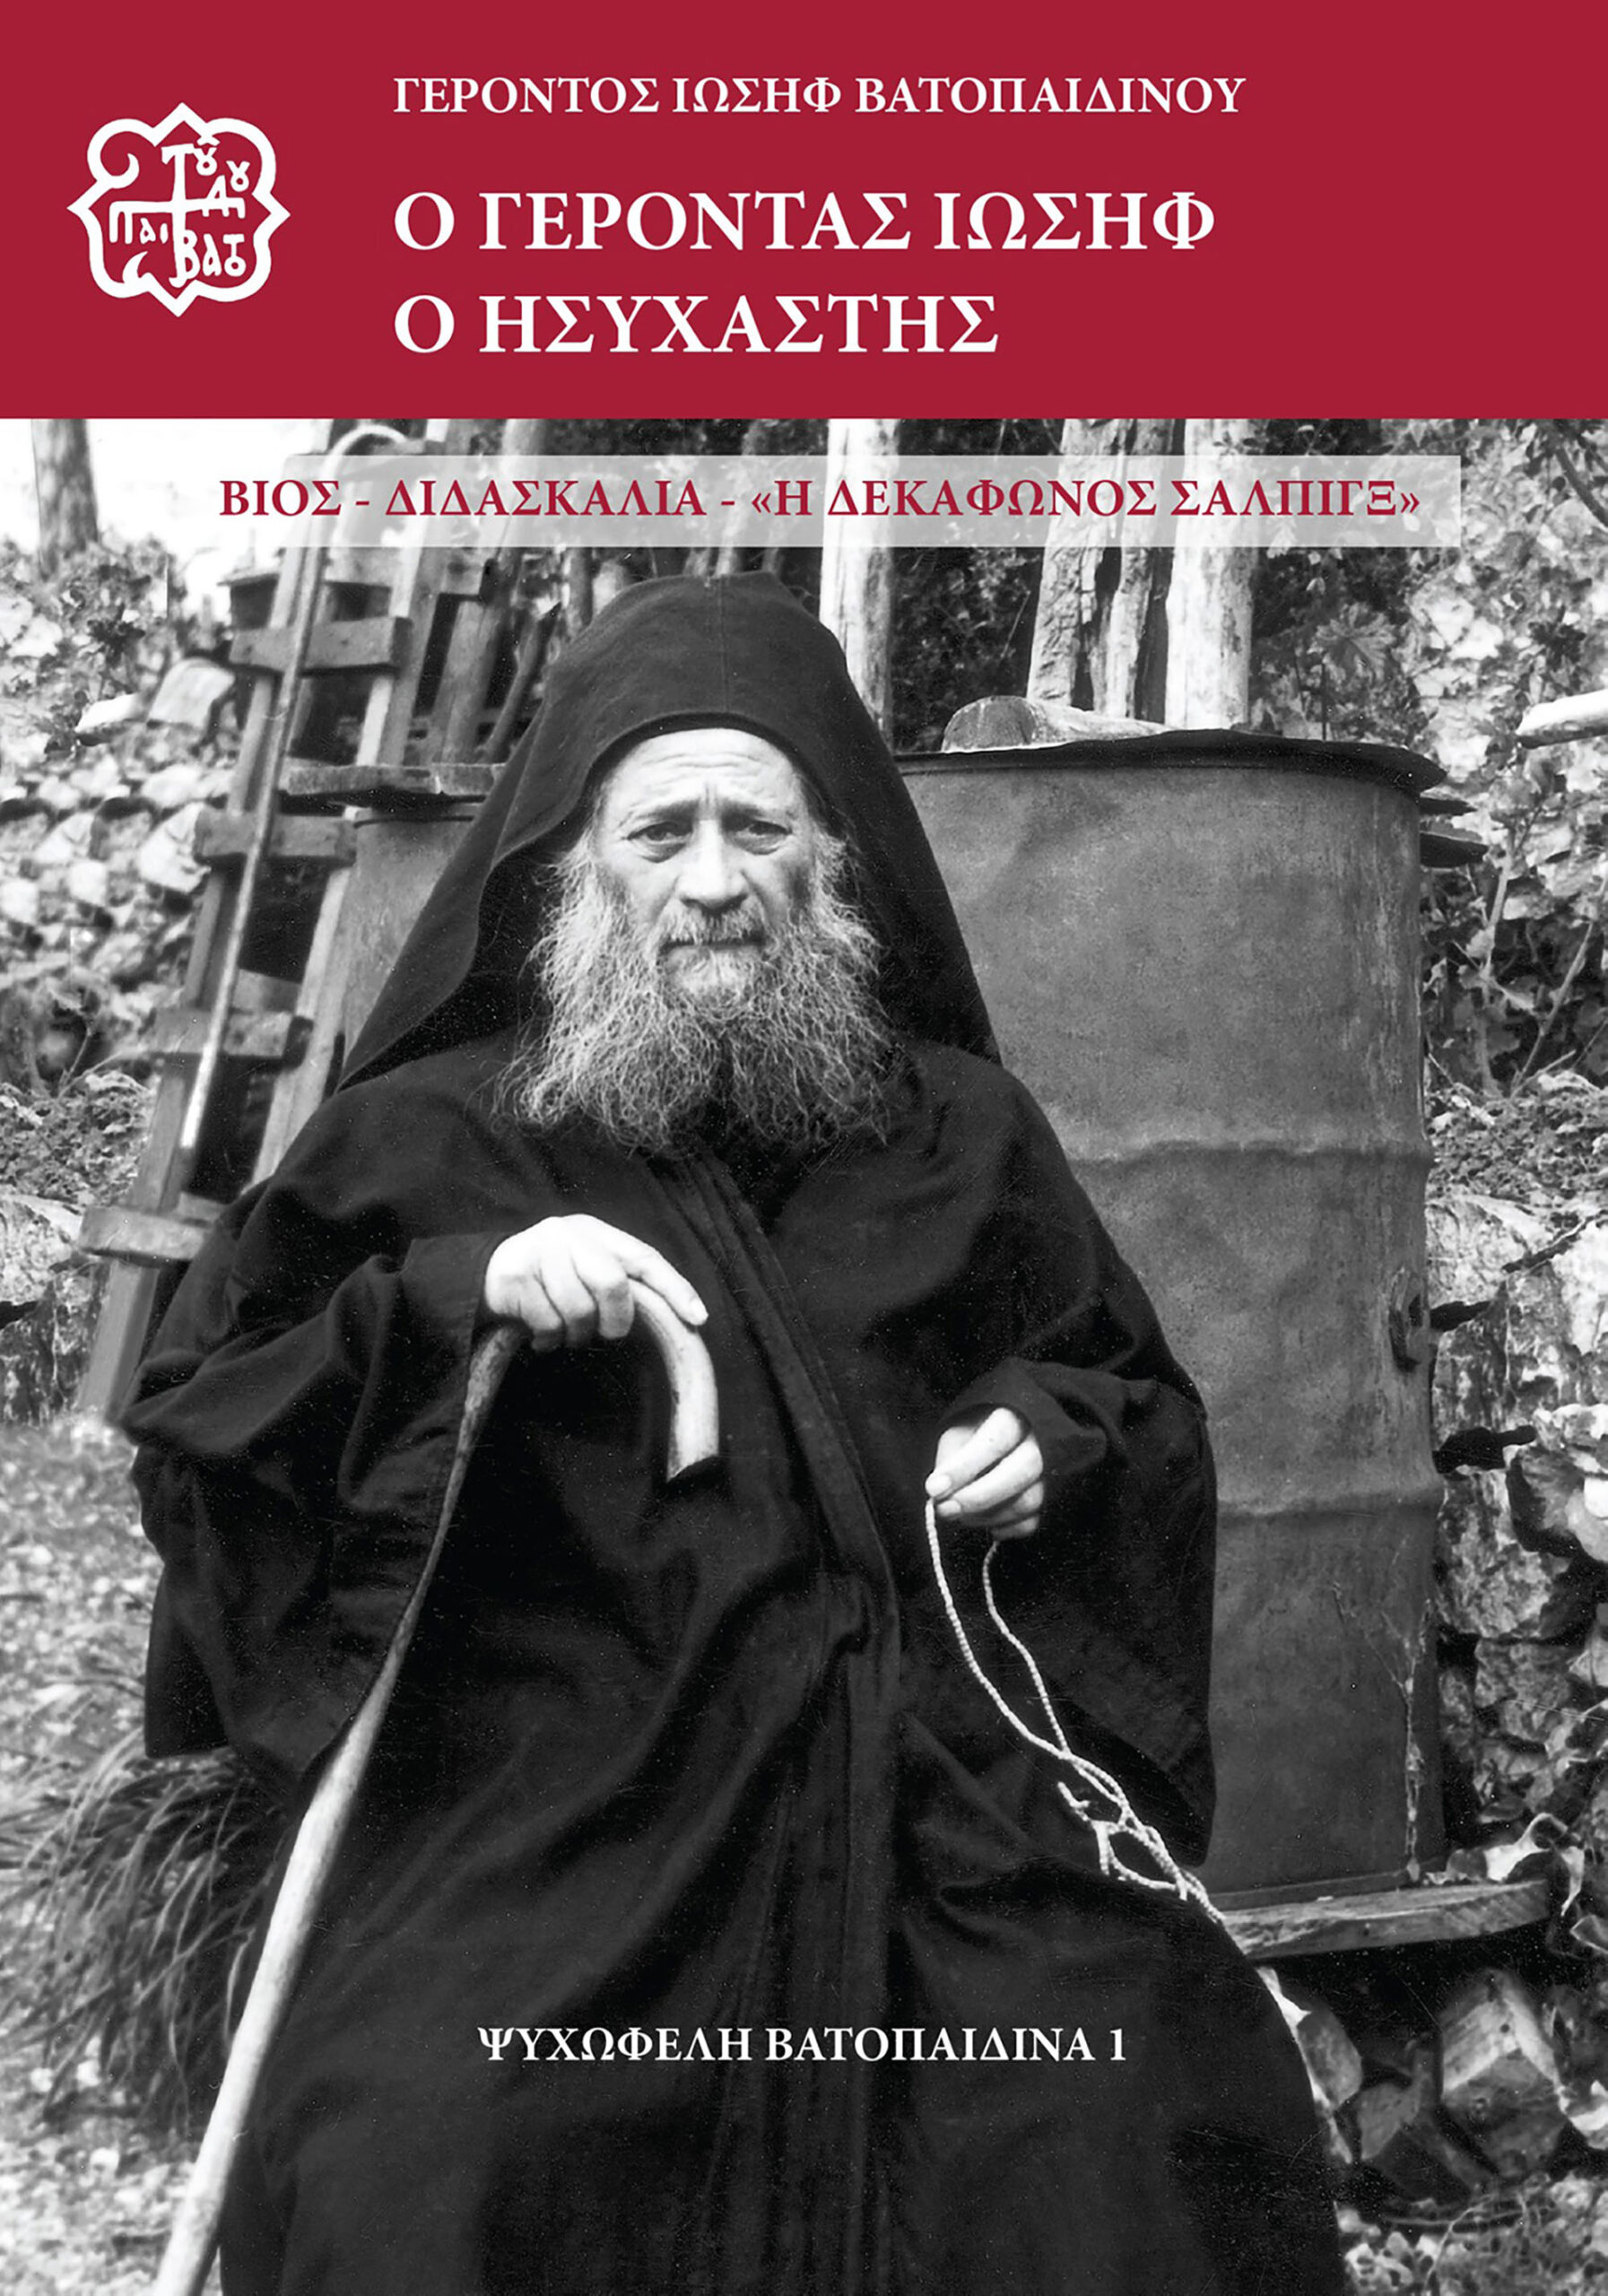 Elder_Joseph_Hesychast-greek_cover